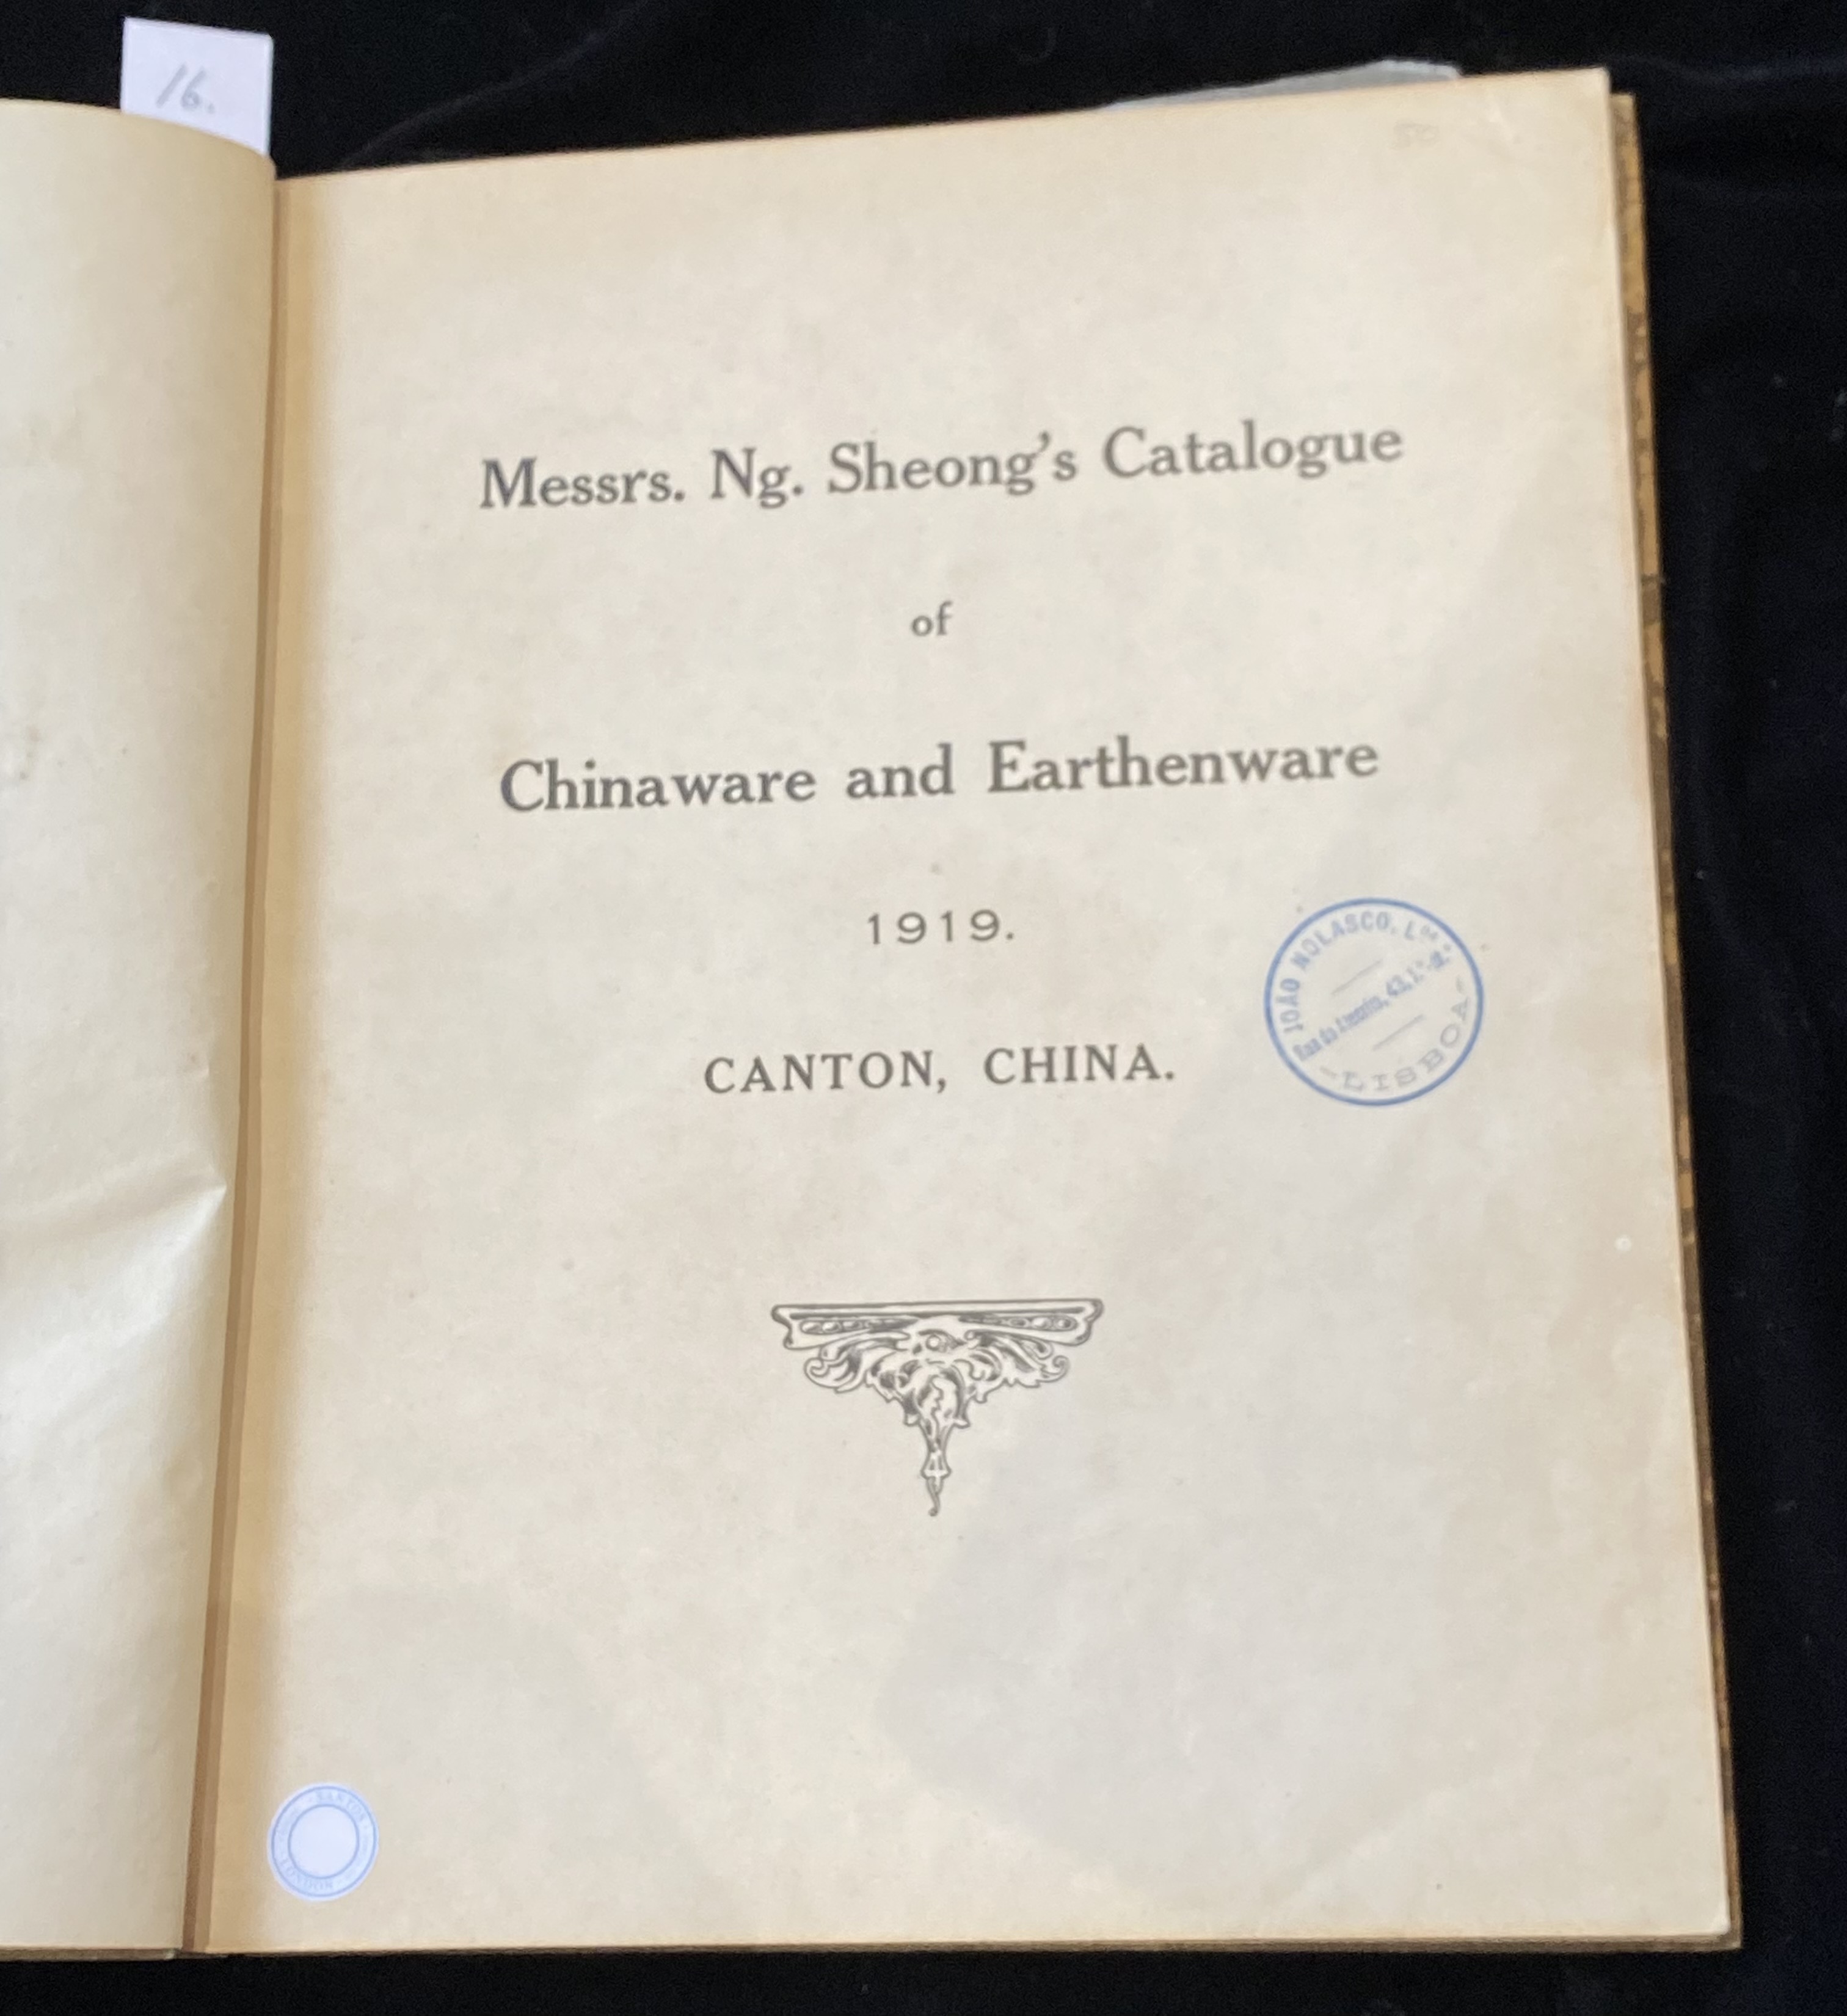 MESSRS. NG. SHEONG’S CATALOGUE OF CHINAWARE AND EARTHENWARE, CANTON, CHINA, 1919 - Image 5 of 12